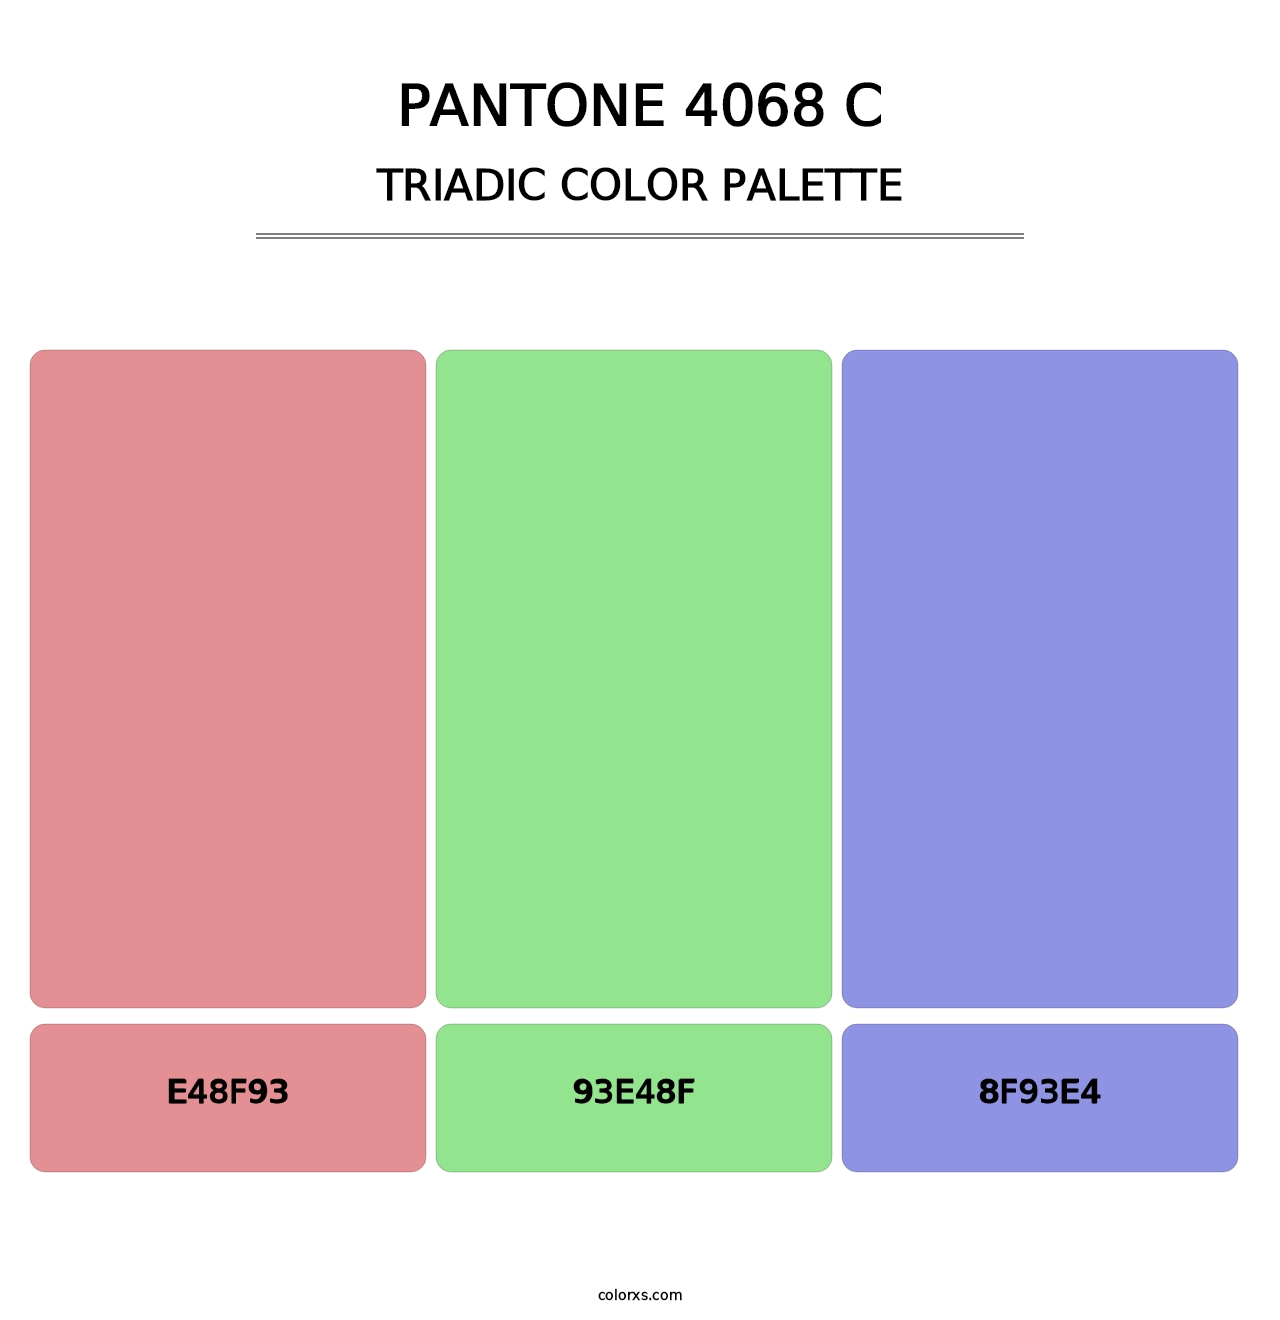 PANTONE 4068 C - Triadic Color Palette